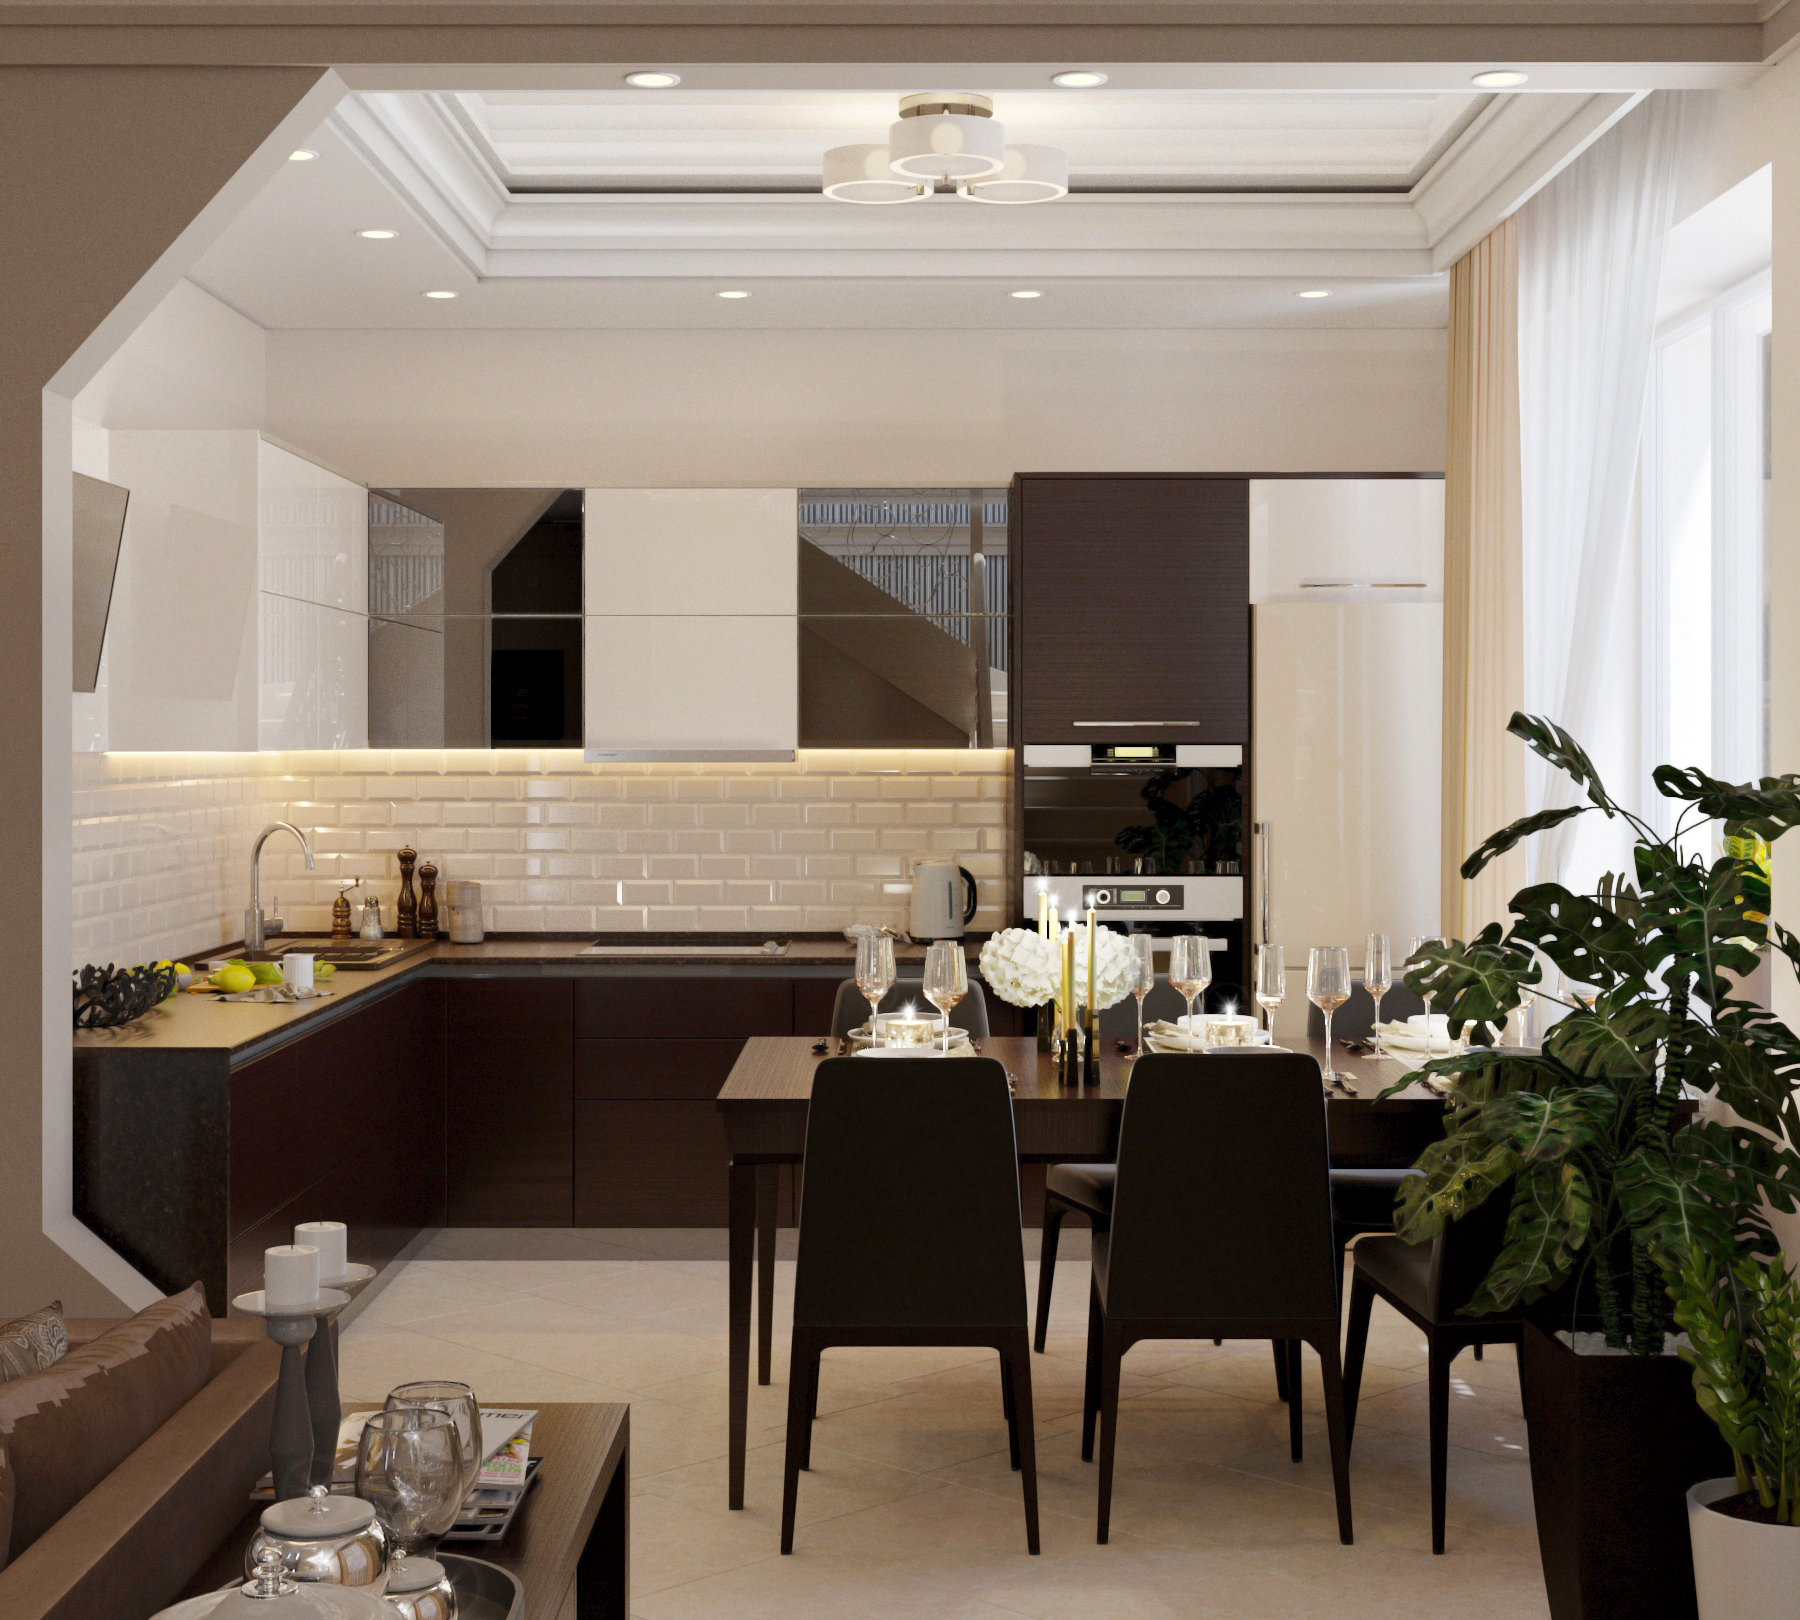 кухня-гостиная в 3d max corona render изображение